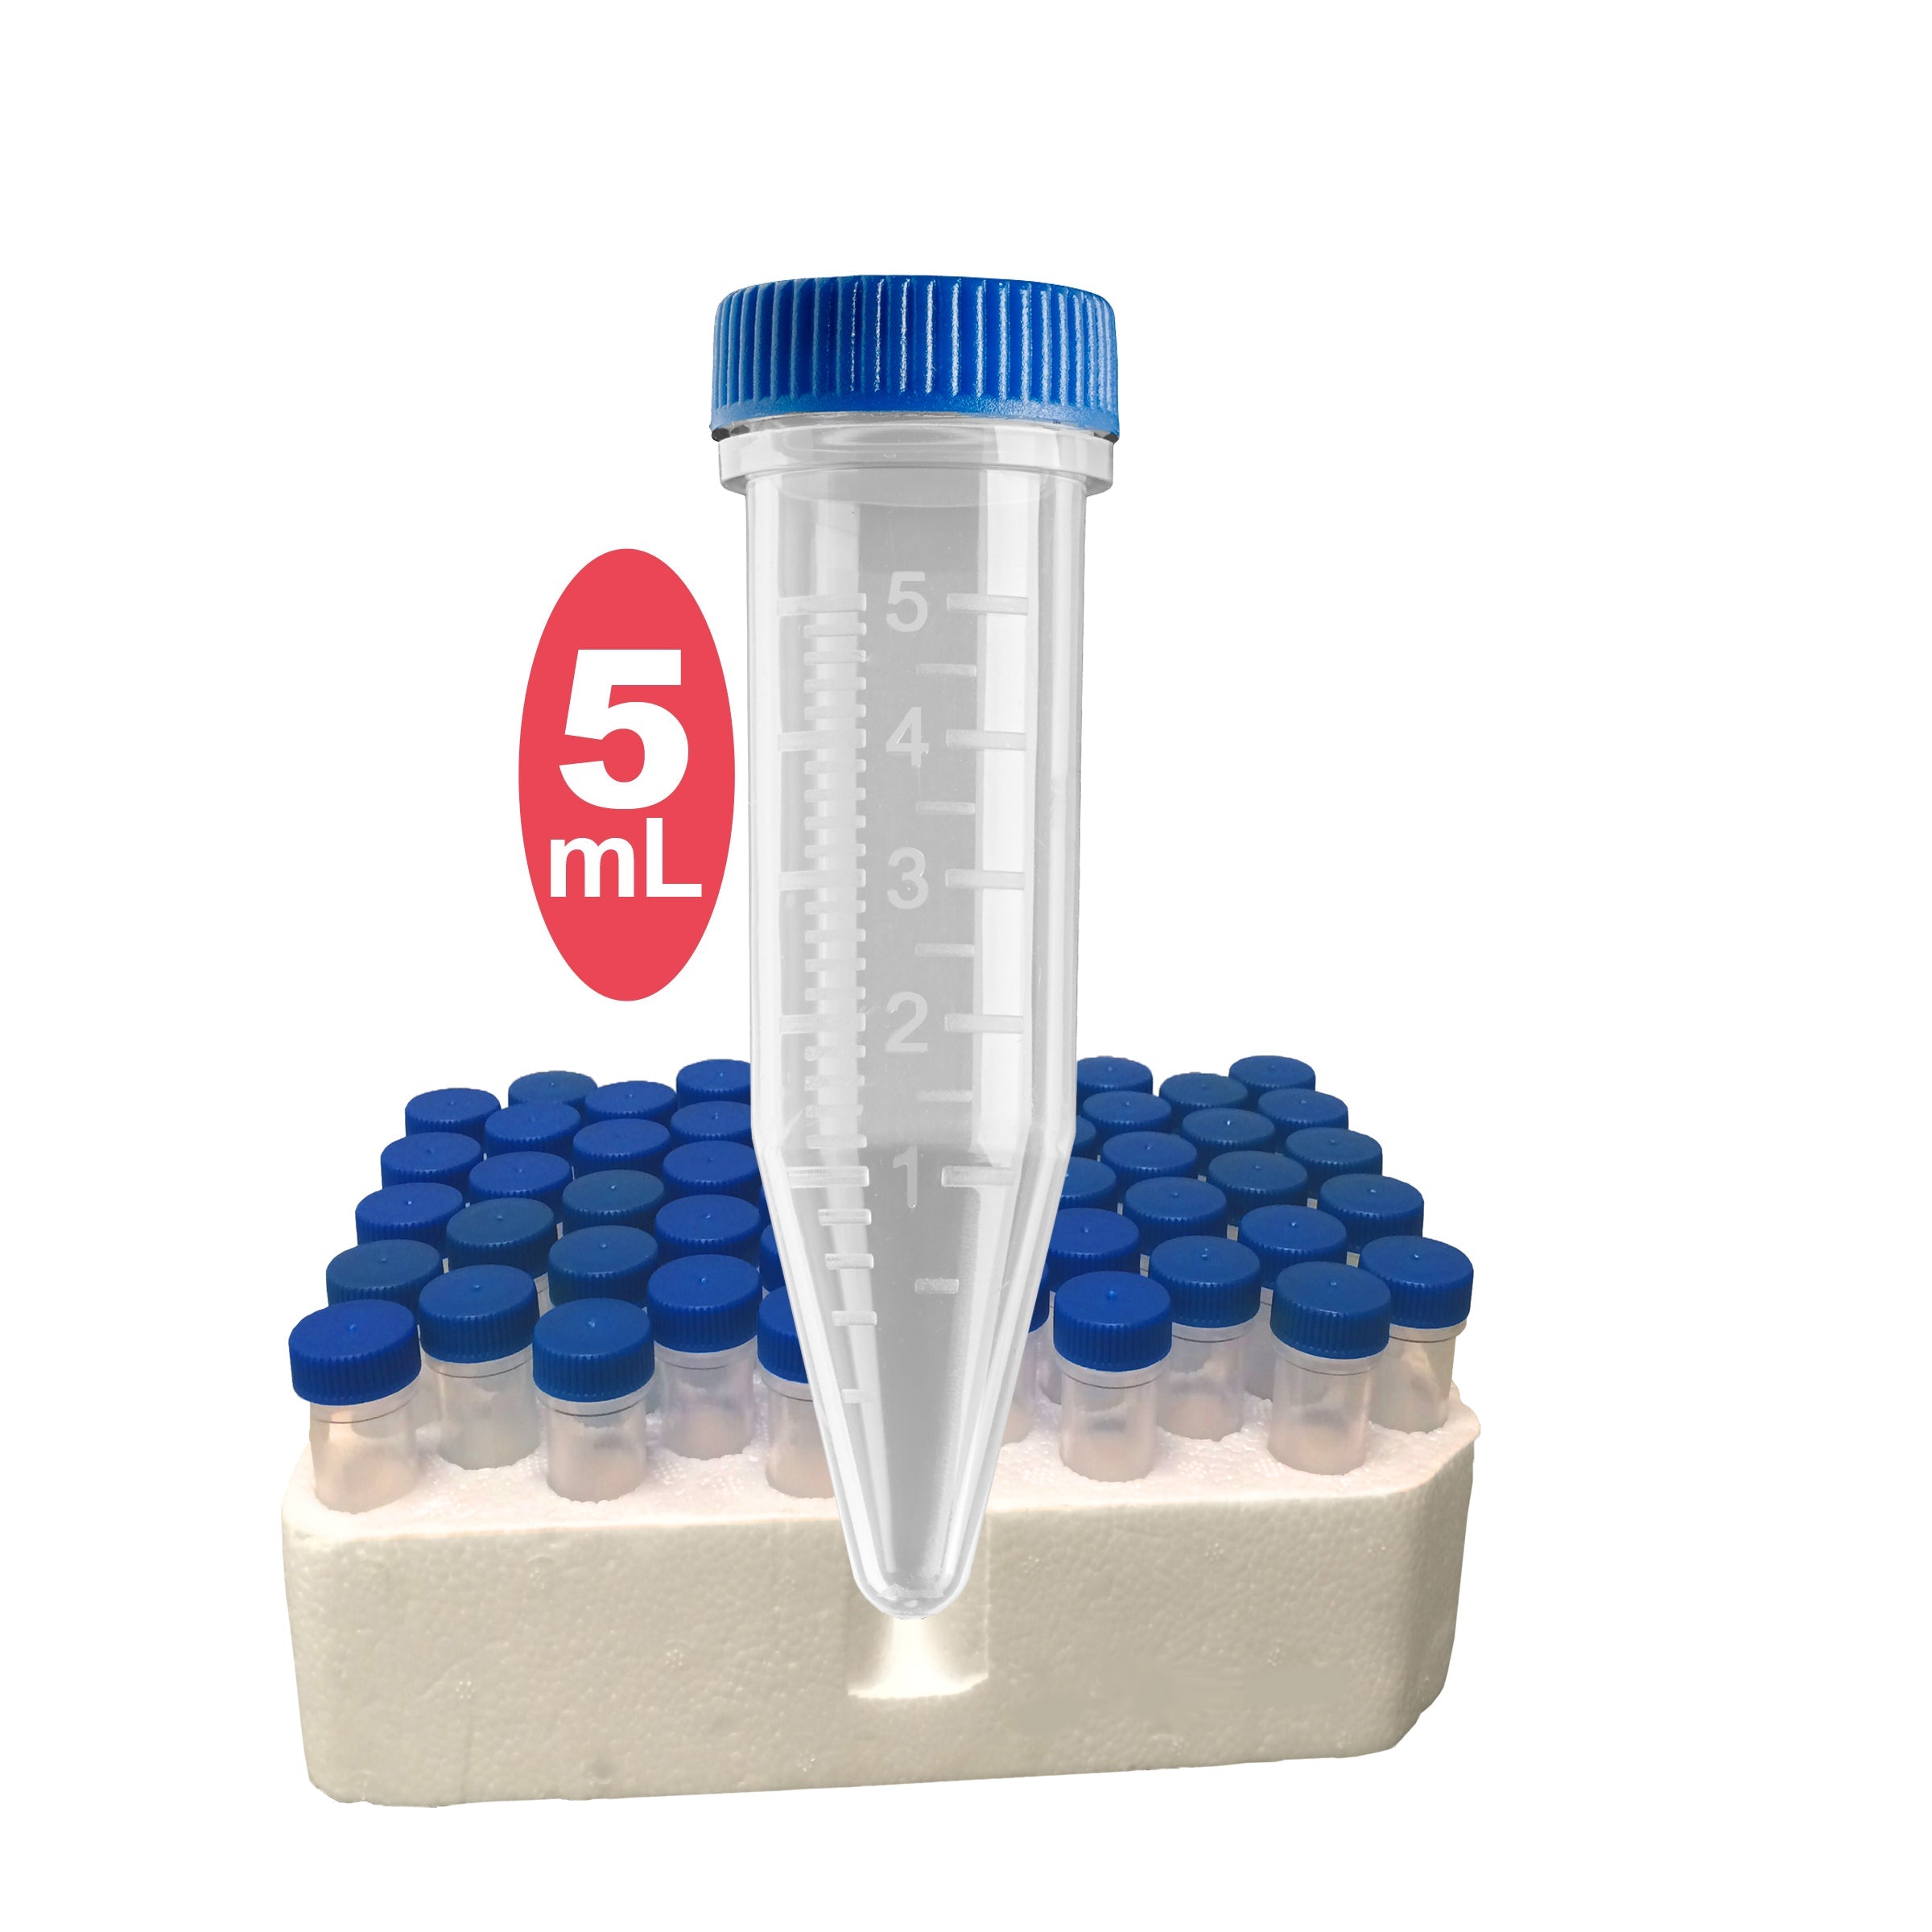 MTC Bio C2535, 5ml Screw-Cap MacroTube, Sterile, with Screw Caps, Packed in Bags Of 100